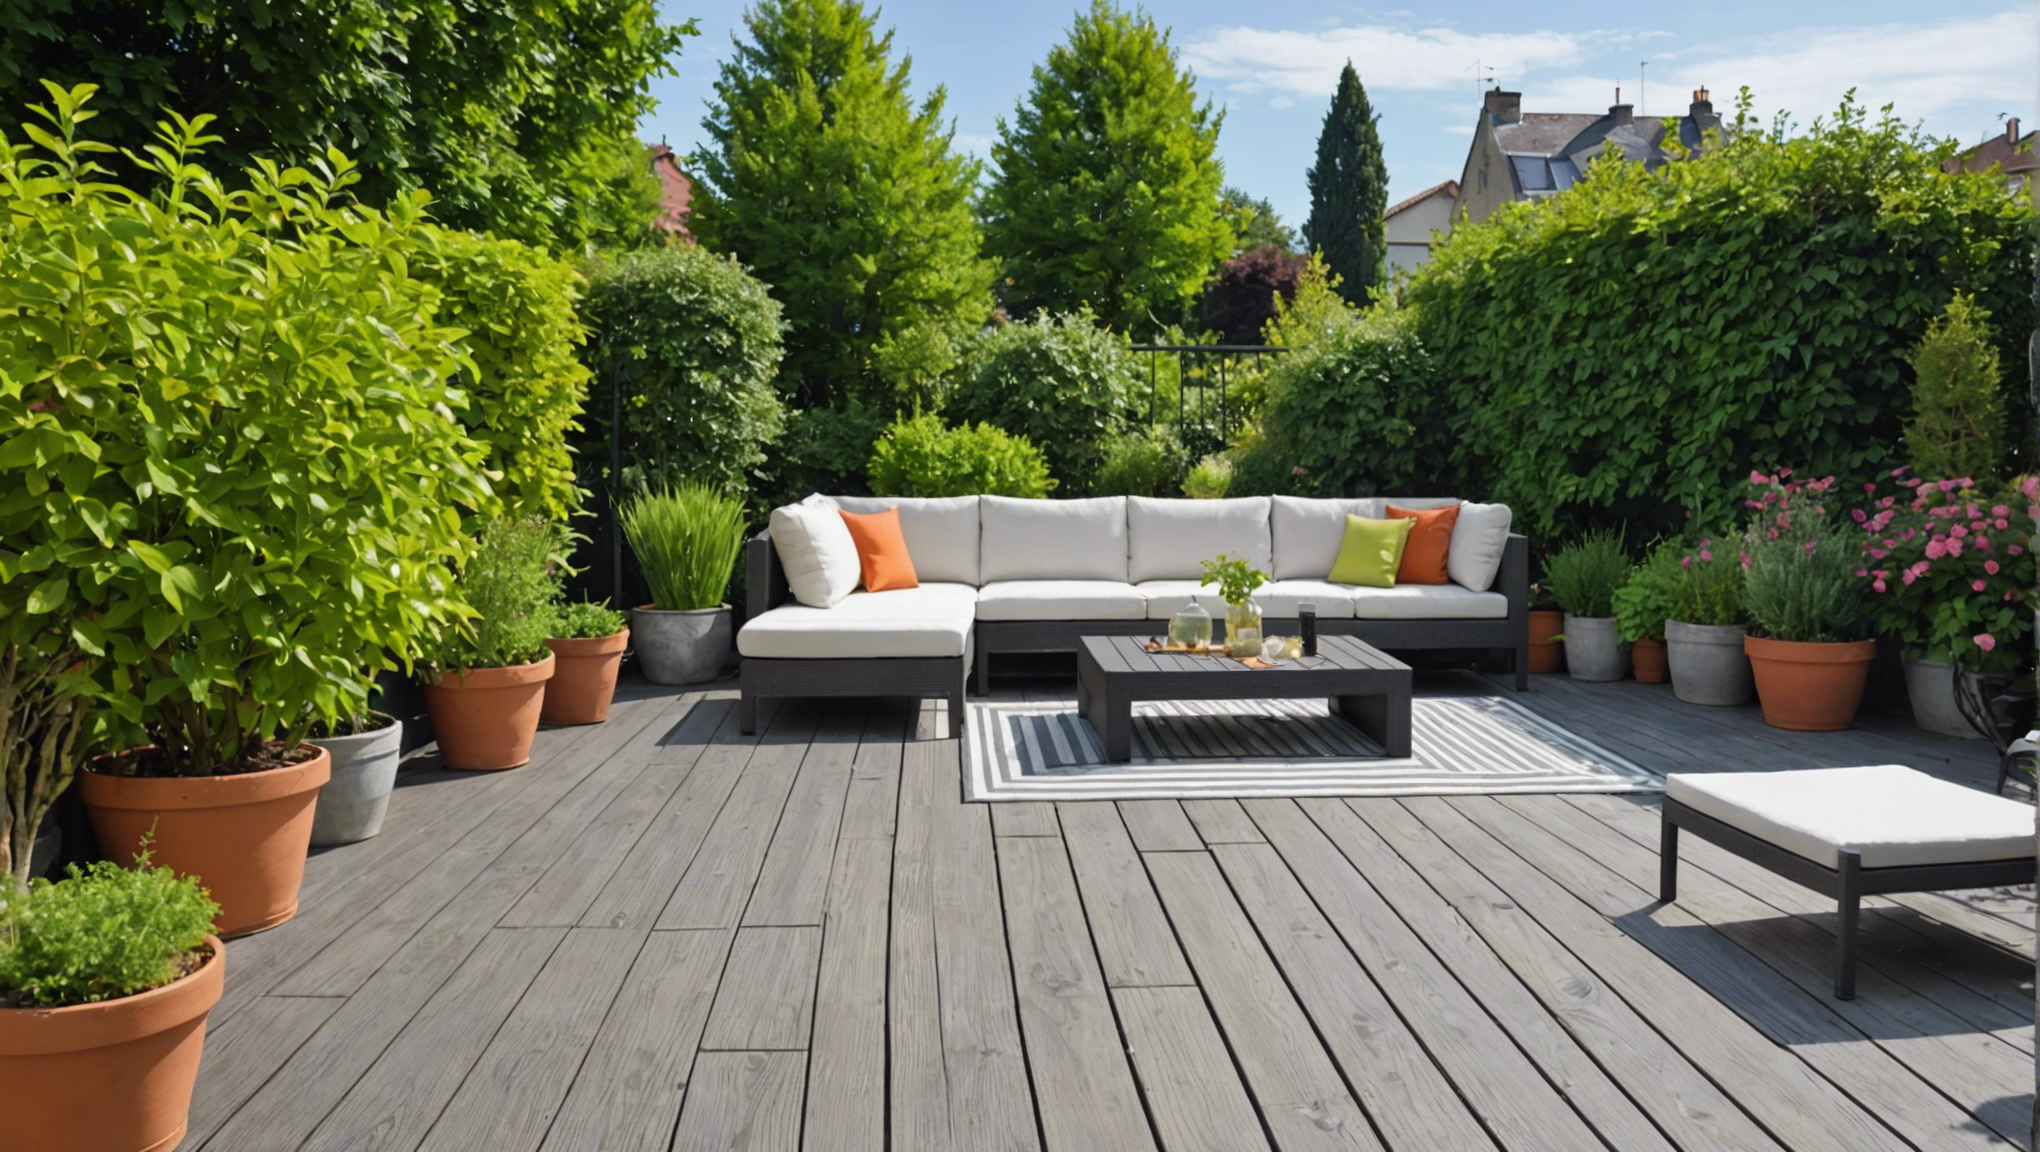 découvrez nos astuces pour aménager votre terrasse de manière efficace afin de réussir votre jardinage.